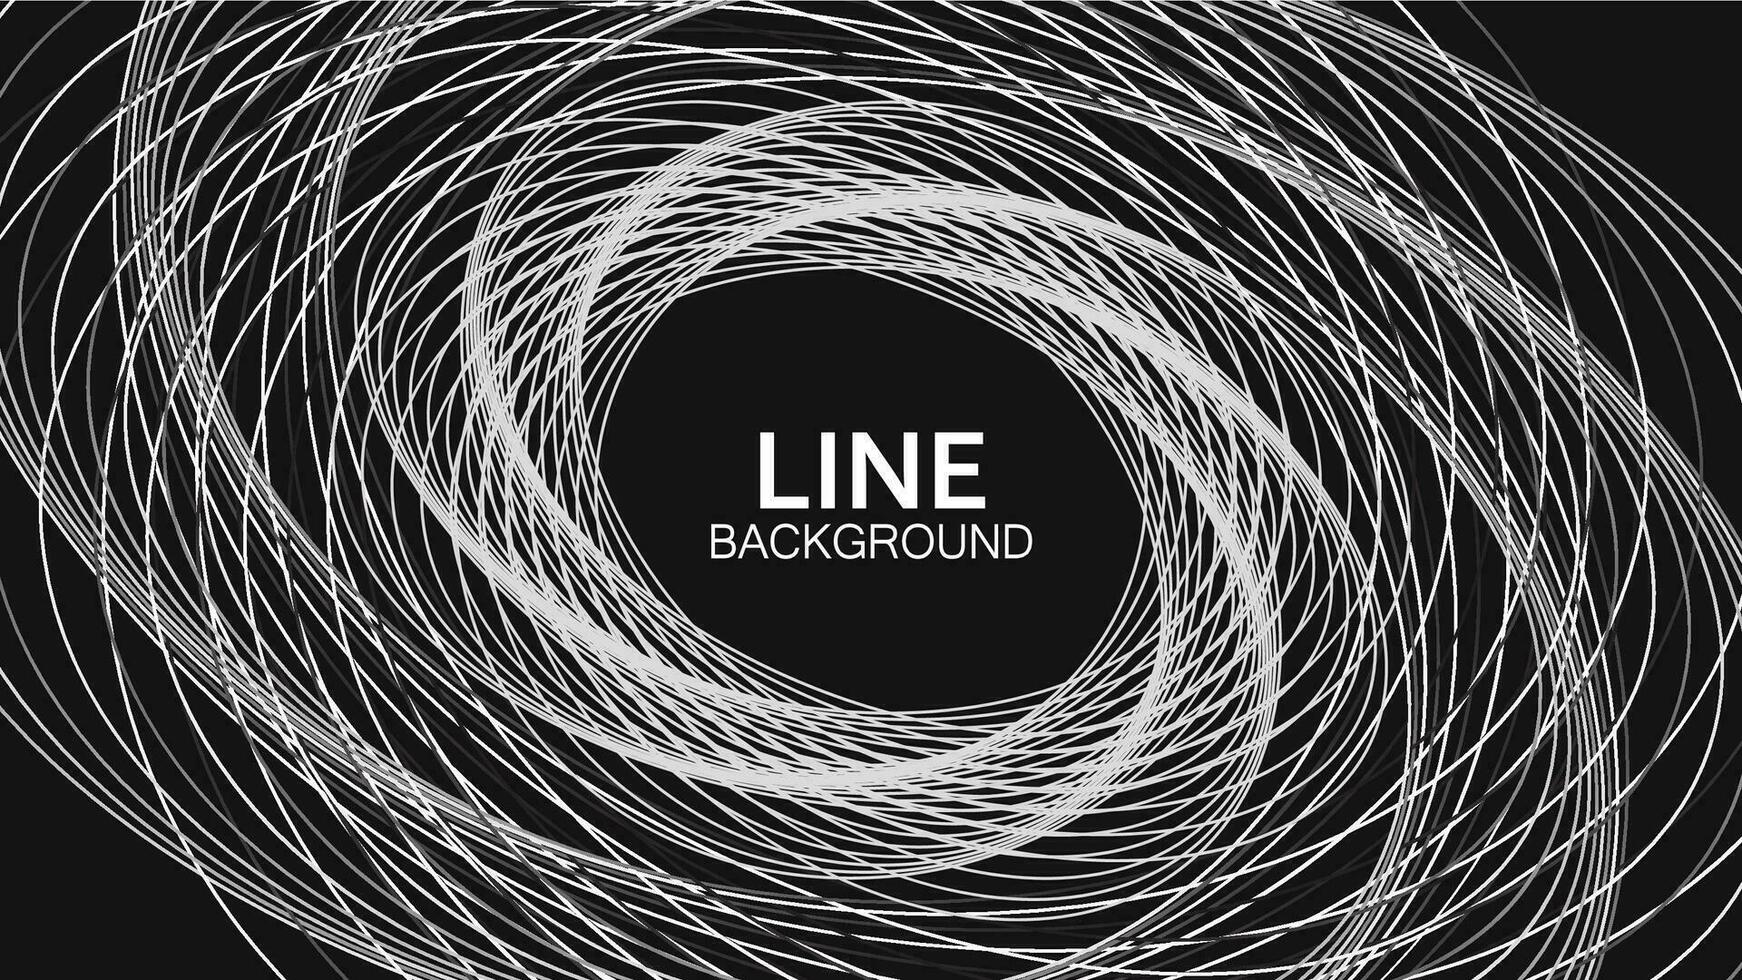 Vektor Illustration von ein einfarbig Kreis Linie Hintergrund Design mit ein harmonisch und futuristisch Stil.